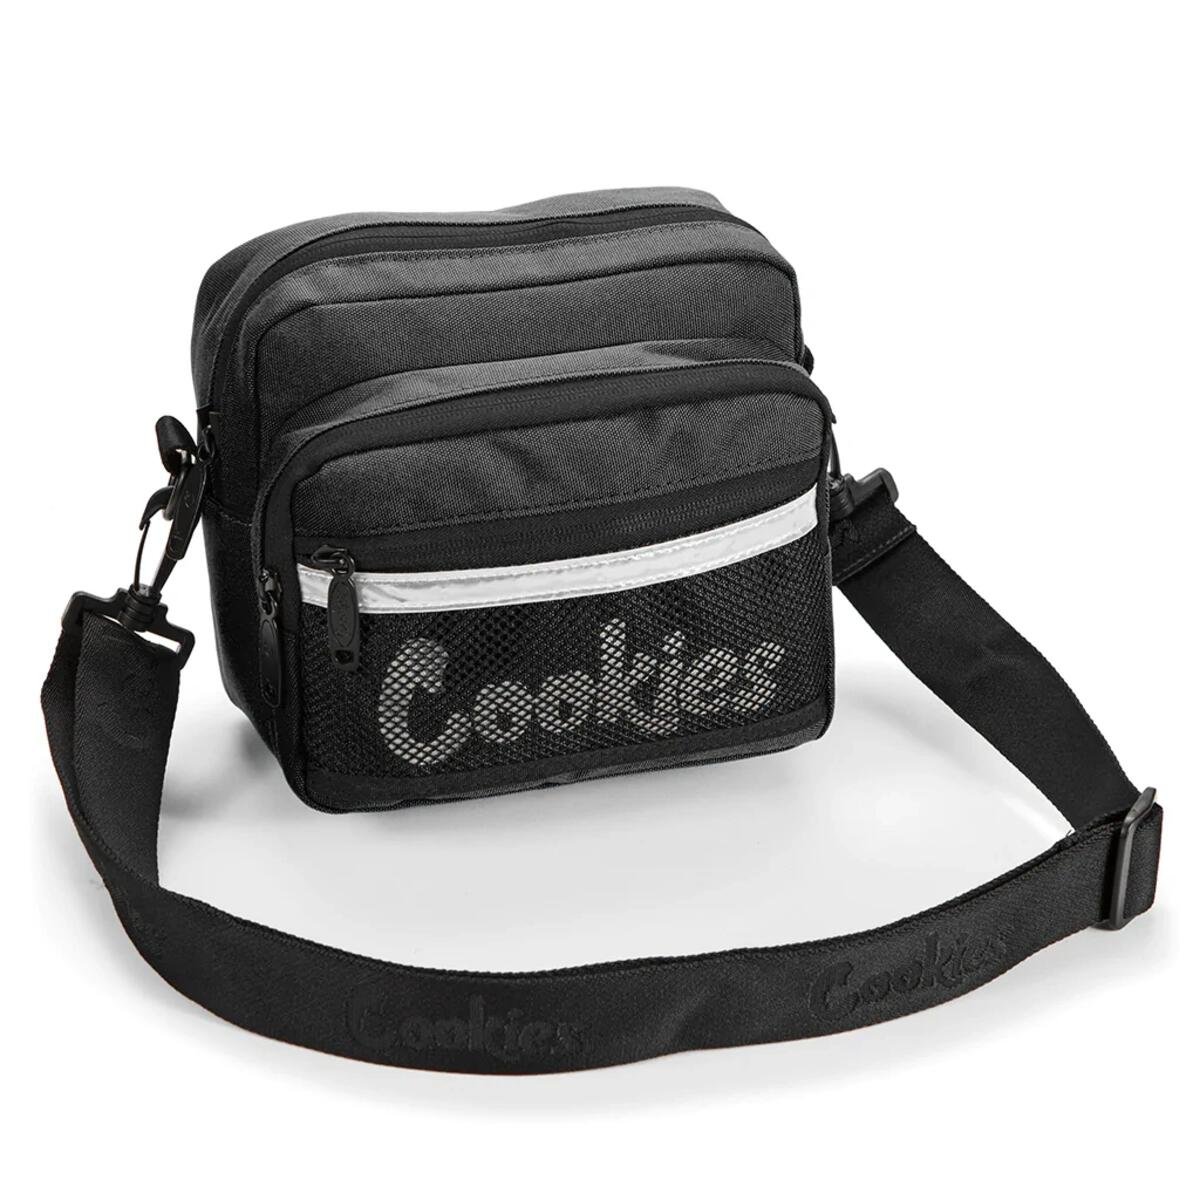 Cookies Rackpack Smellproof Black Crossbody Bag